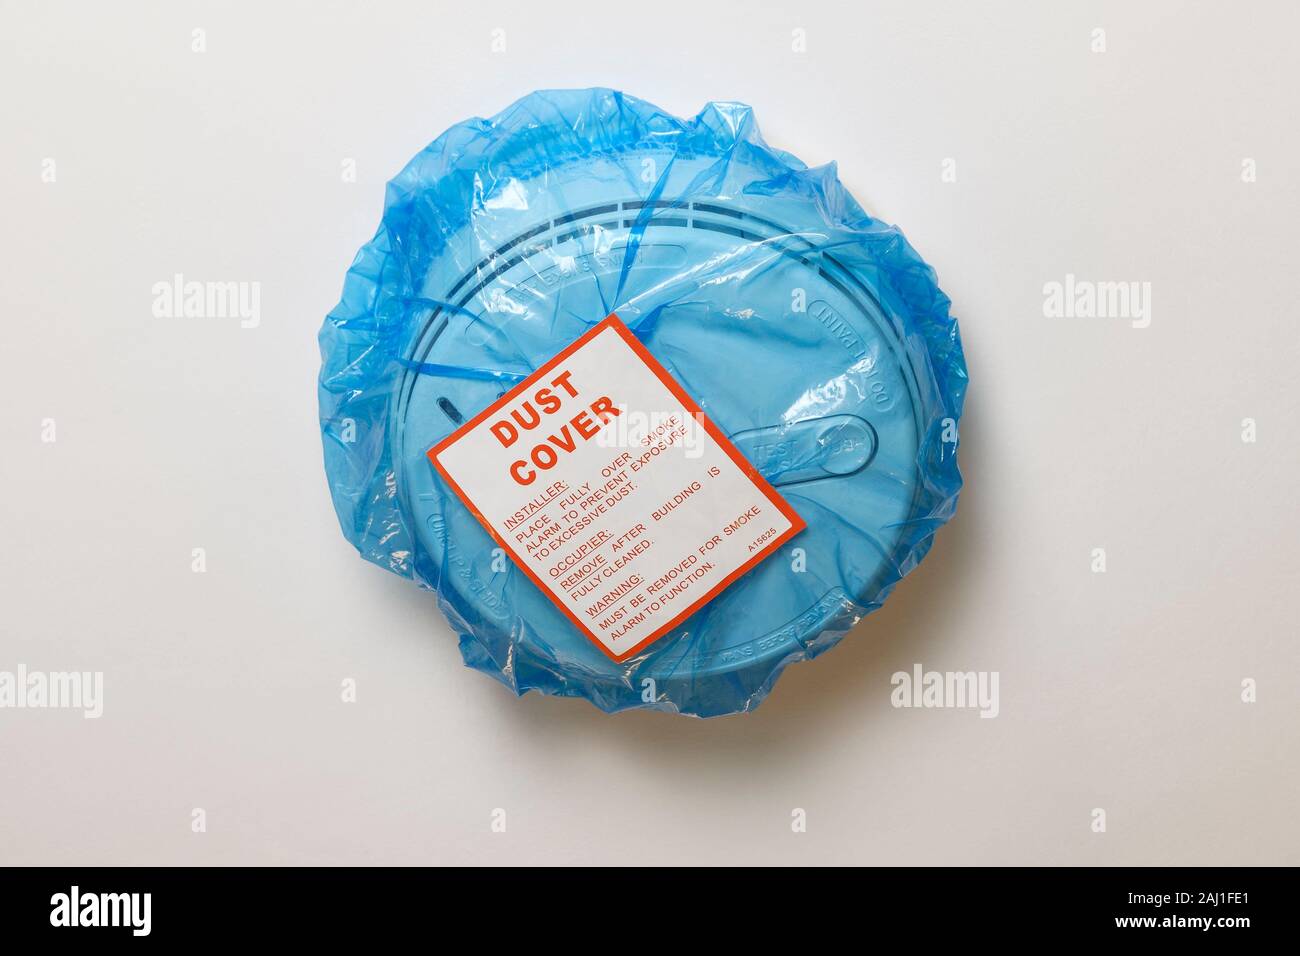 Eine blaue Plastiktüte Staubabdeckung auf ein Netz verdrahtet Rauchmelder in einer BRITISCHEN inländischen Eigenschaft ausgestattet Stockfoto